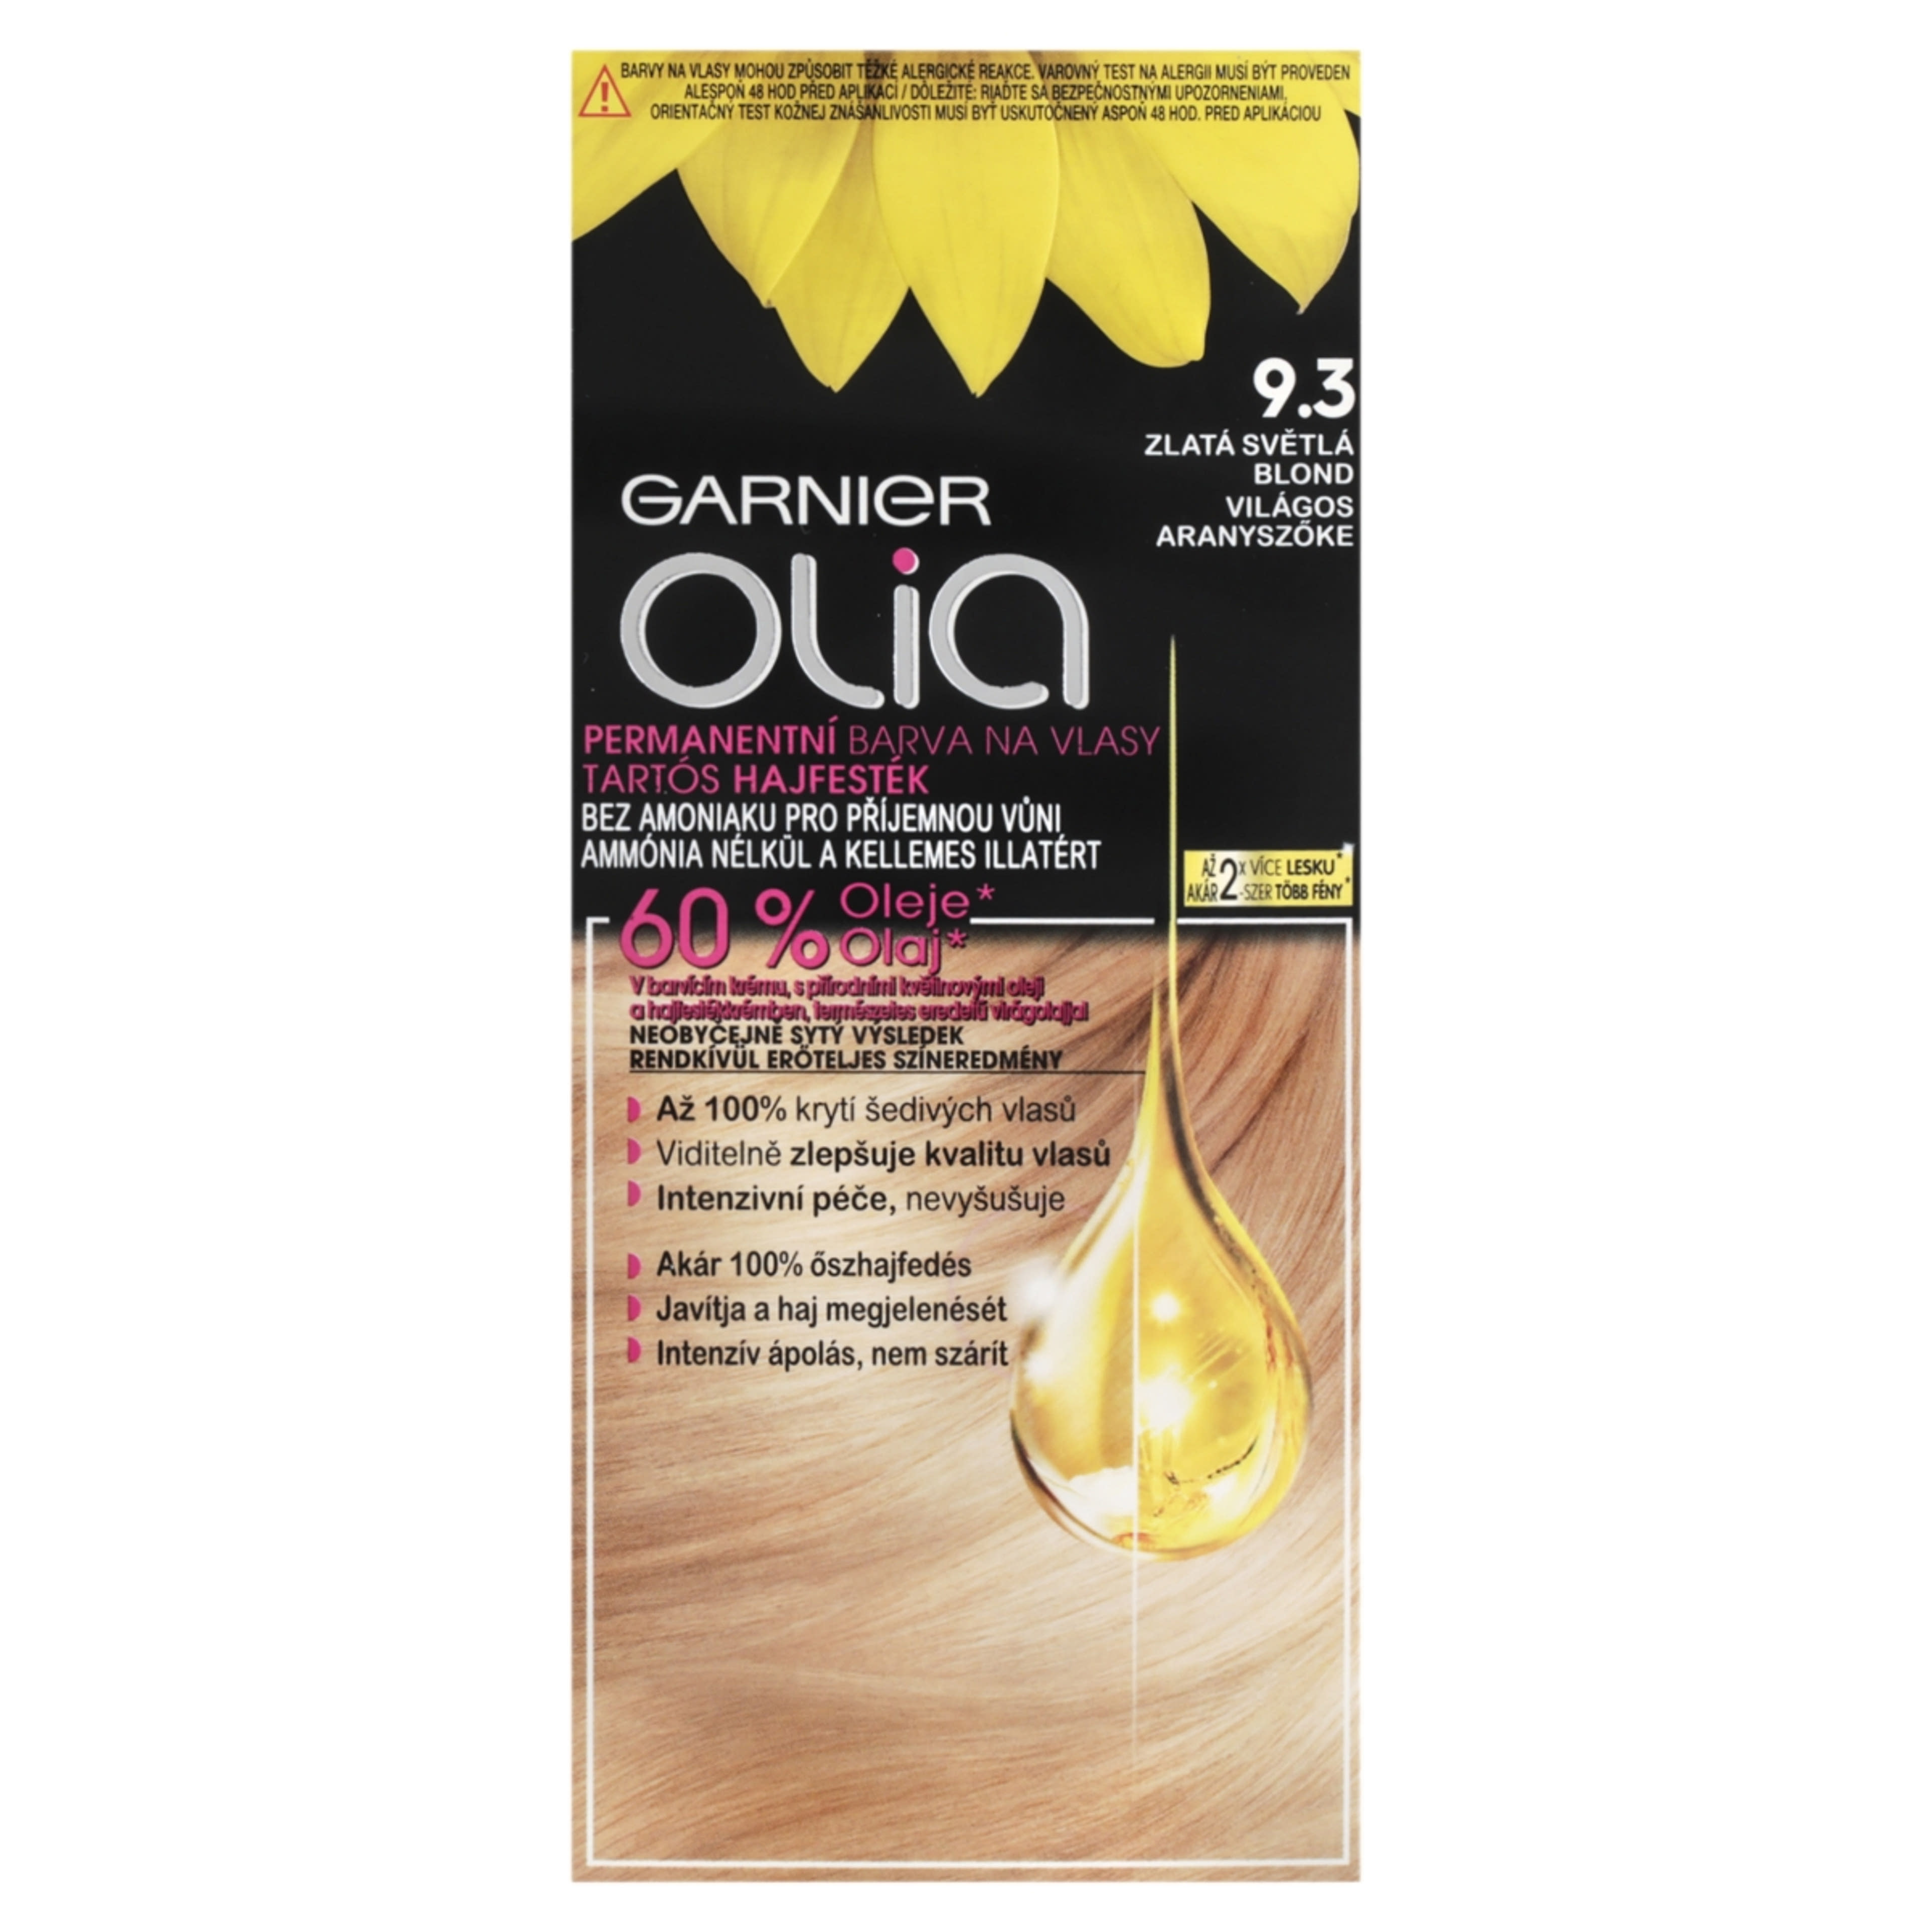 Garnier Olia tartós hajfesték 9.3 Világos aranyszőke - 1 db-3